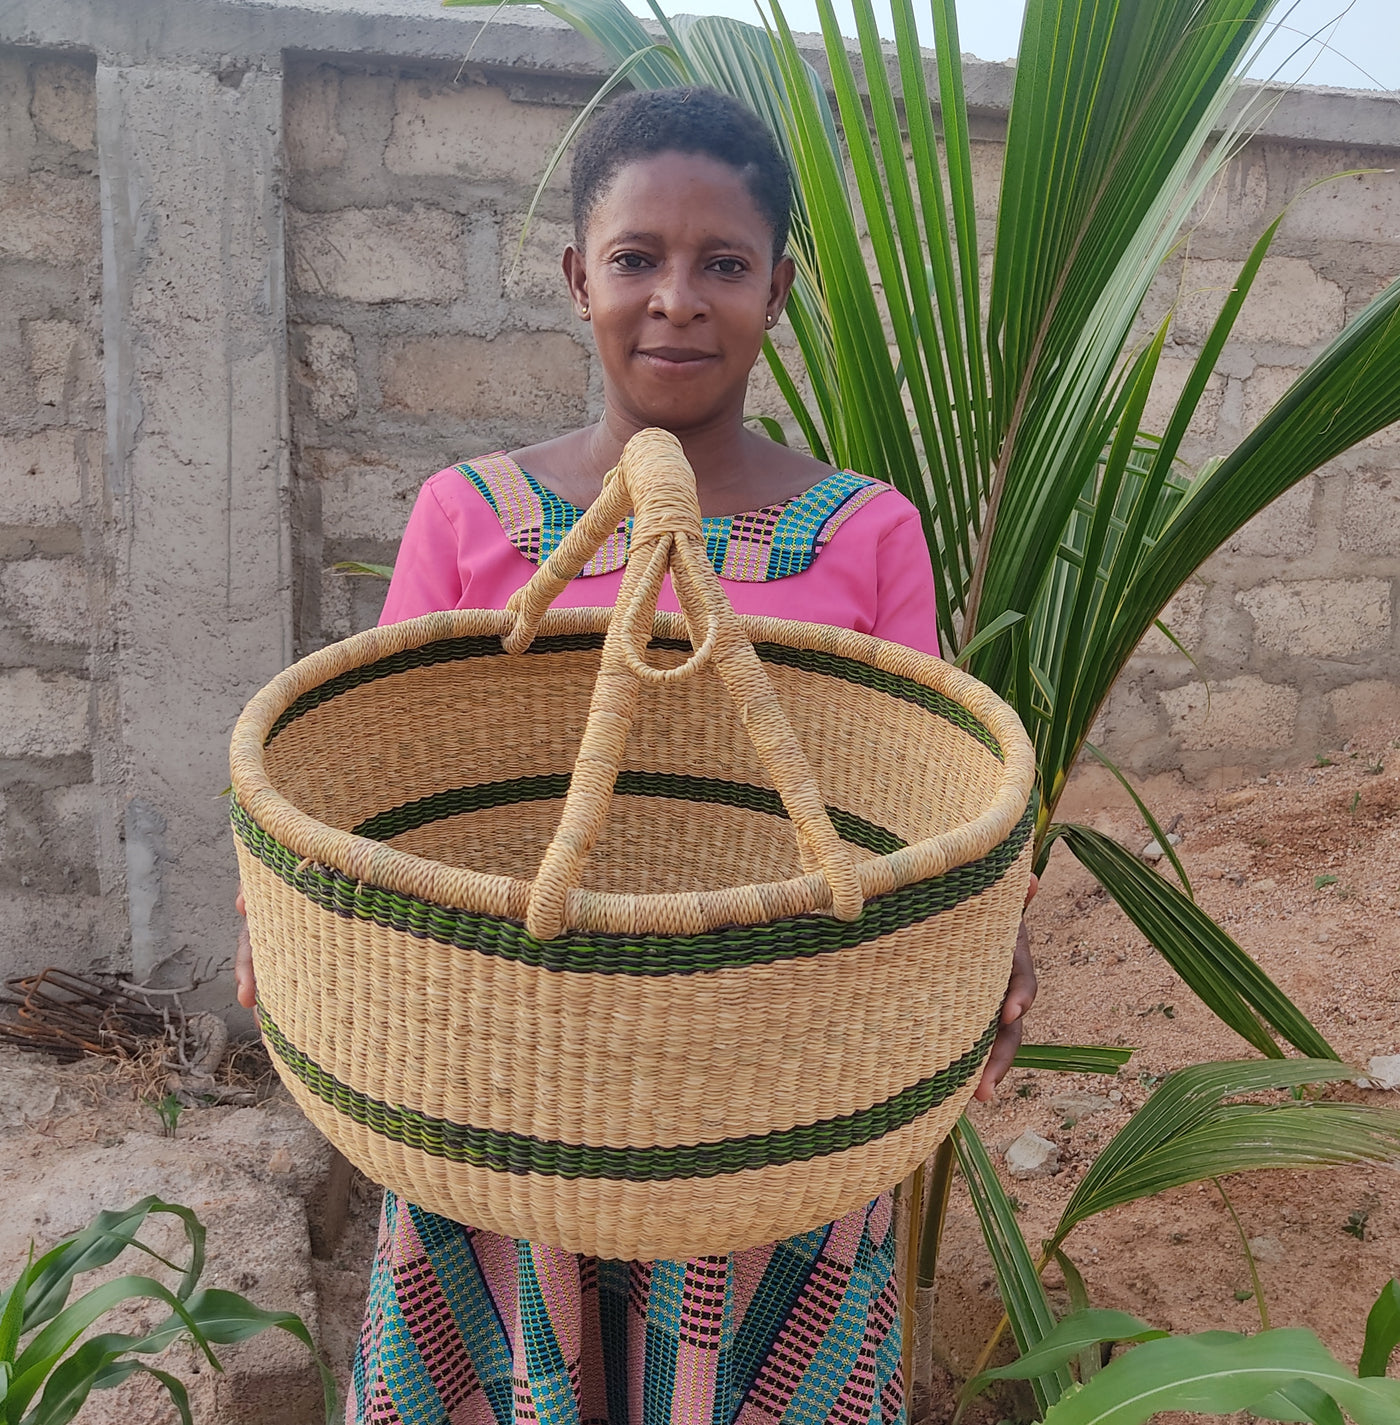 Bolga Market Basket| African basket | Straw bag | Woven basket | Gift basket | African market basket| handmade basket| Market Basket|